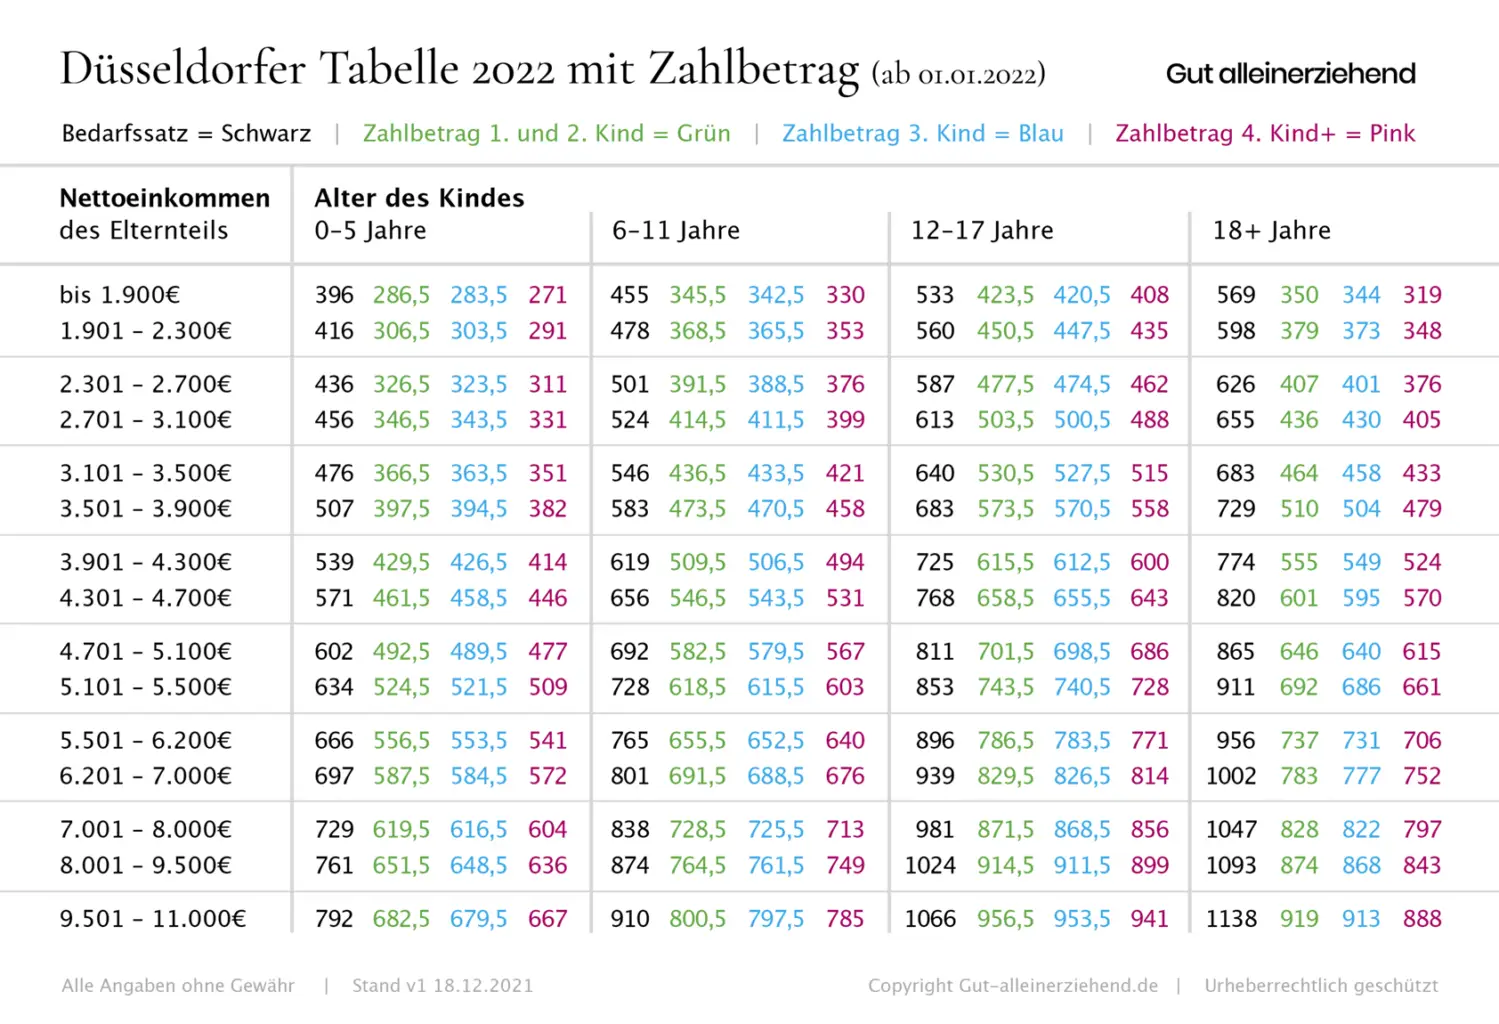 düsseldorfer tabelle 2022 - Determined Friendster